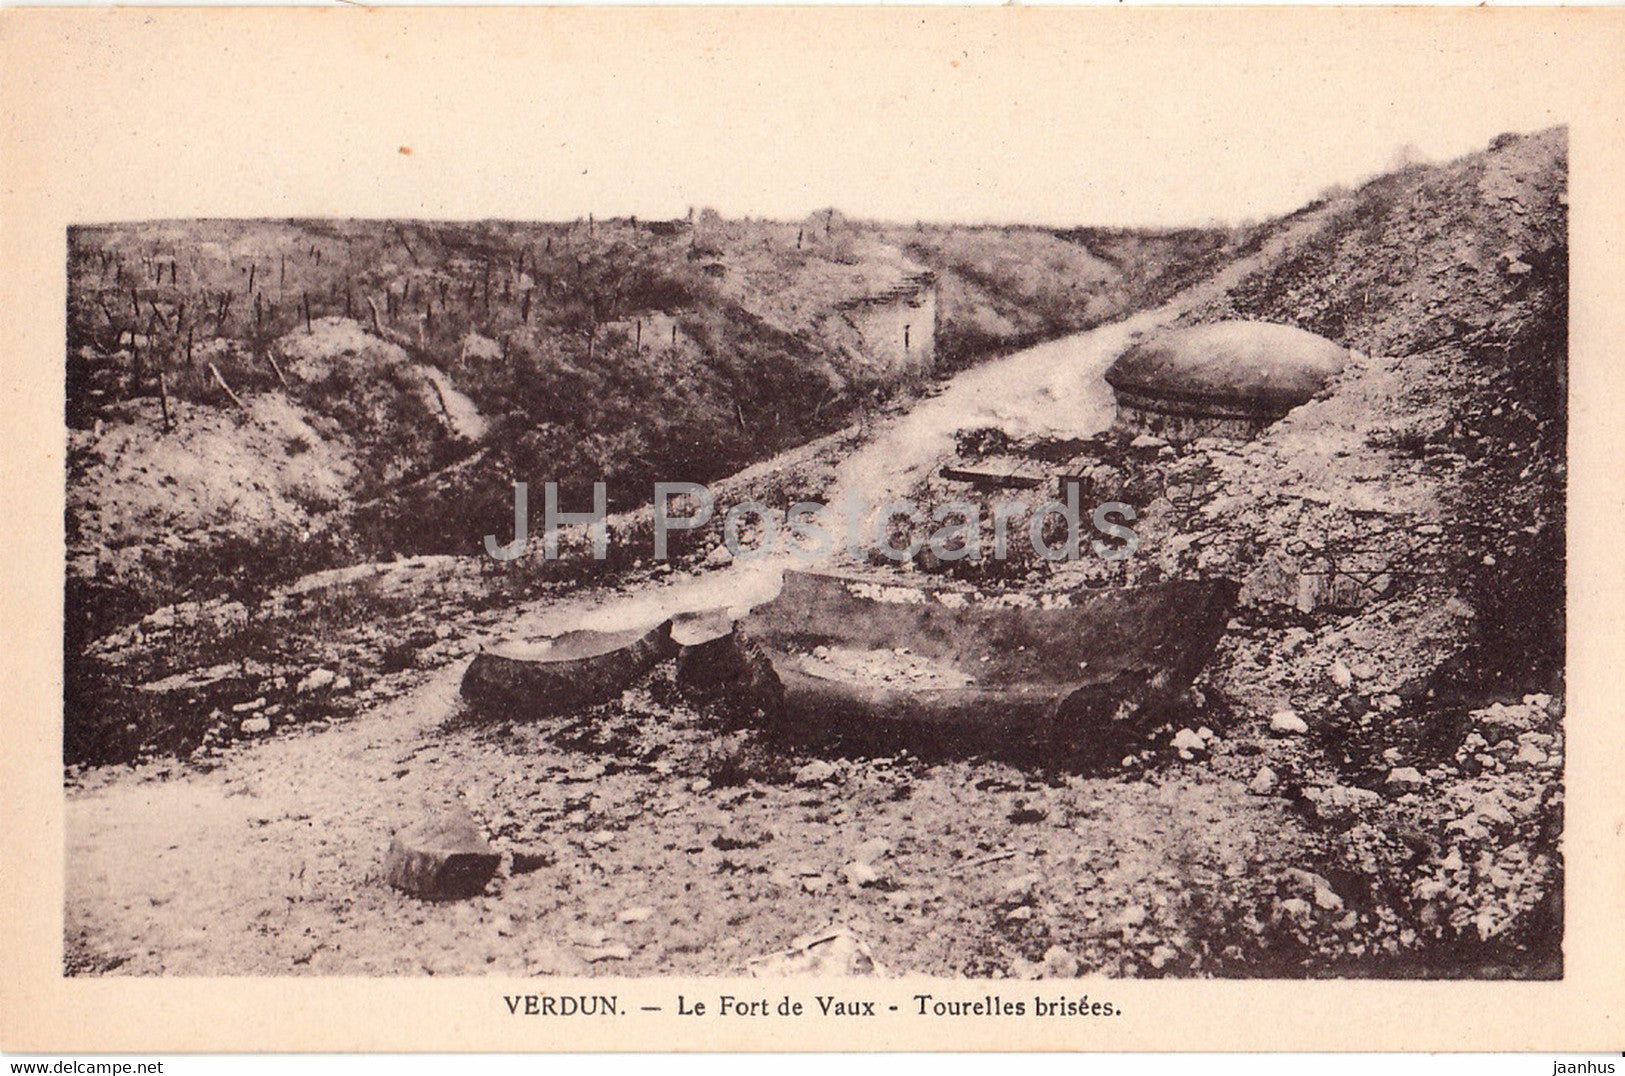 Verdun - Le Fort de Vaux - Tourelles brisees - military - WWI - old postcard - France - unused - JH Postcards